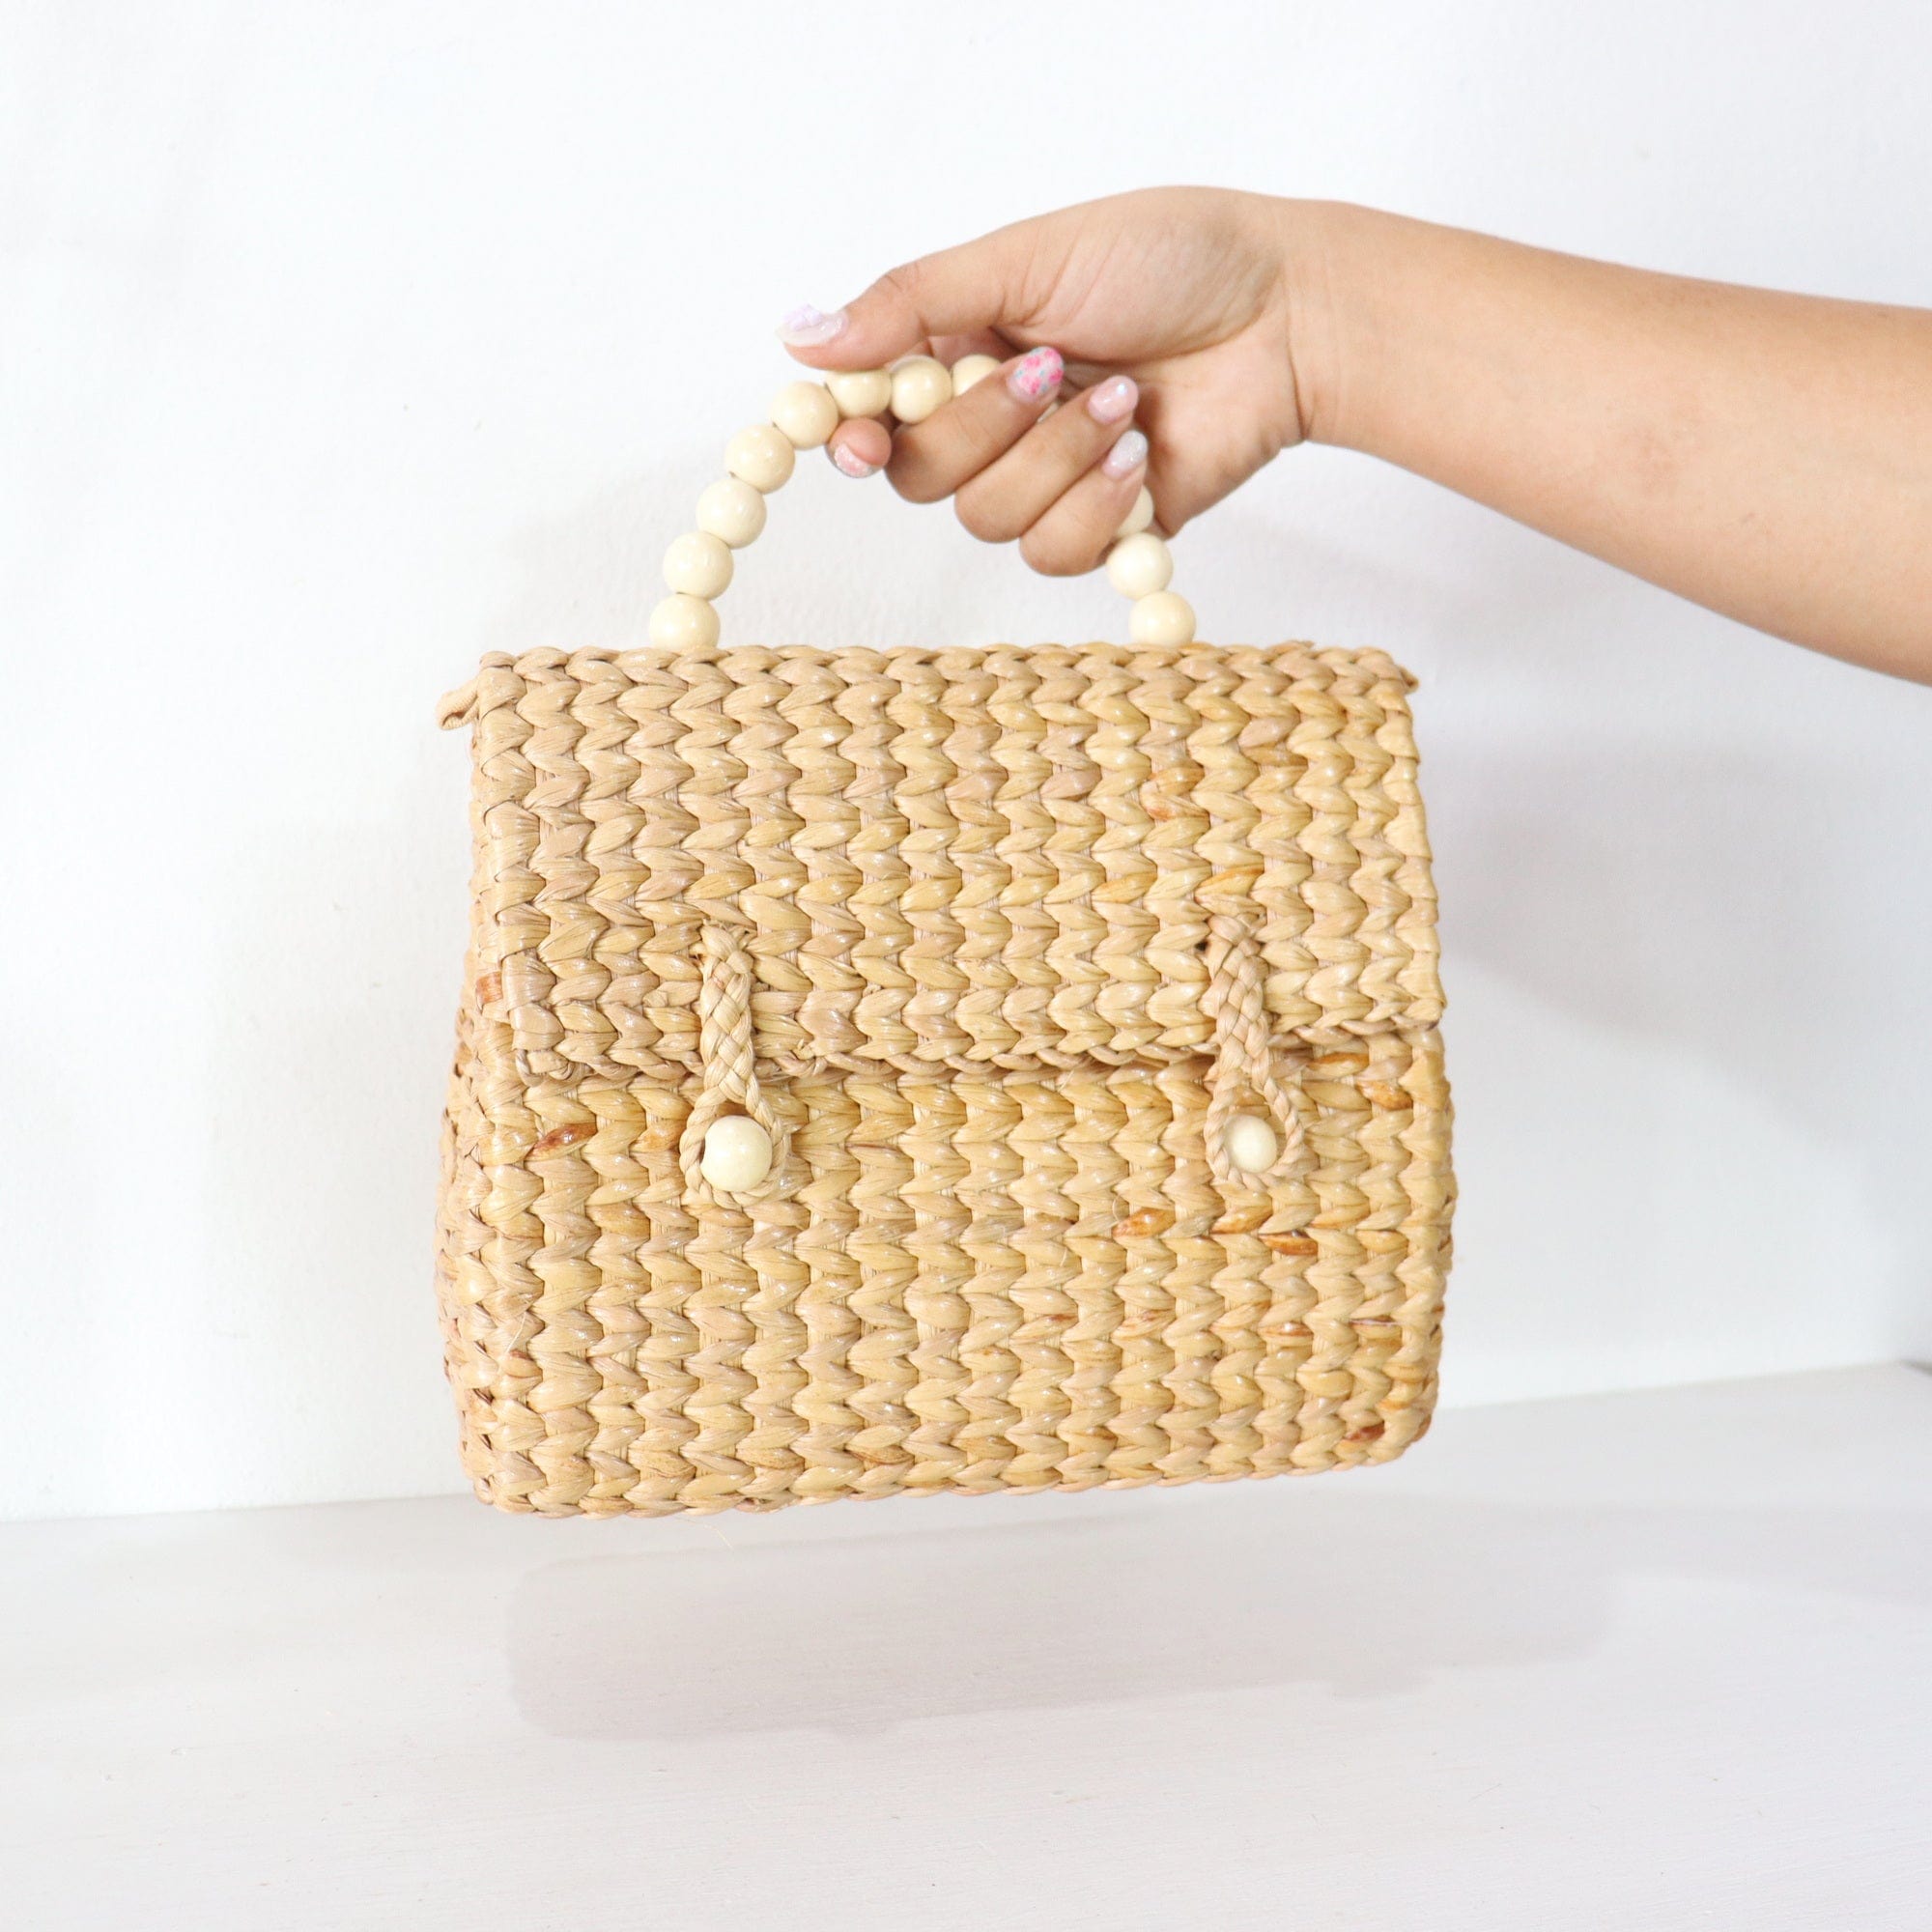 THAIHOME Handbags RINDARA - Straw Bag